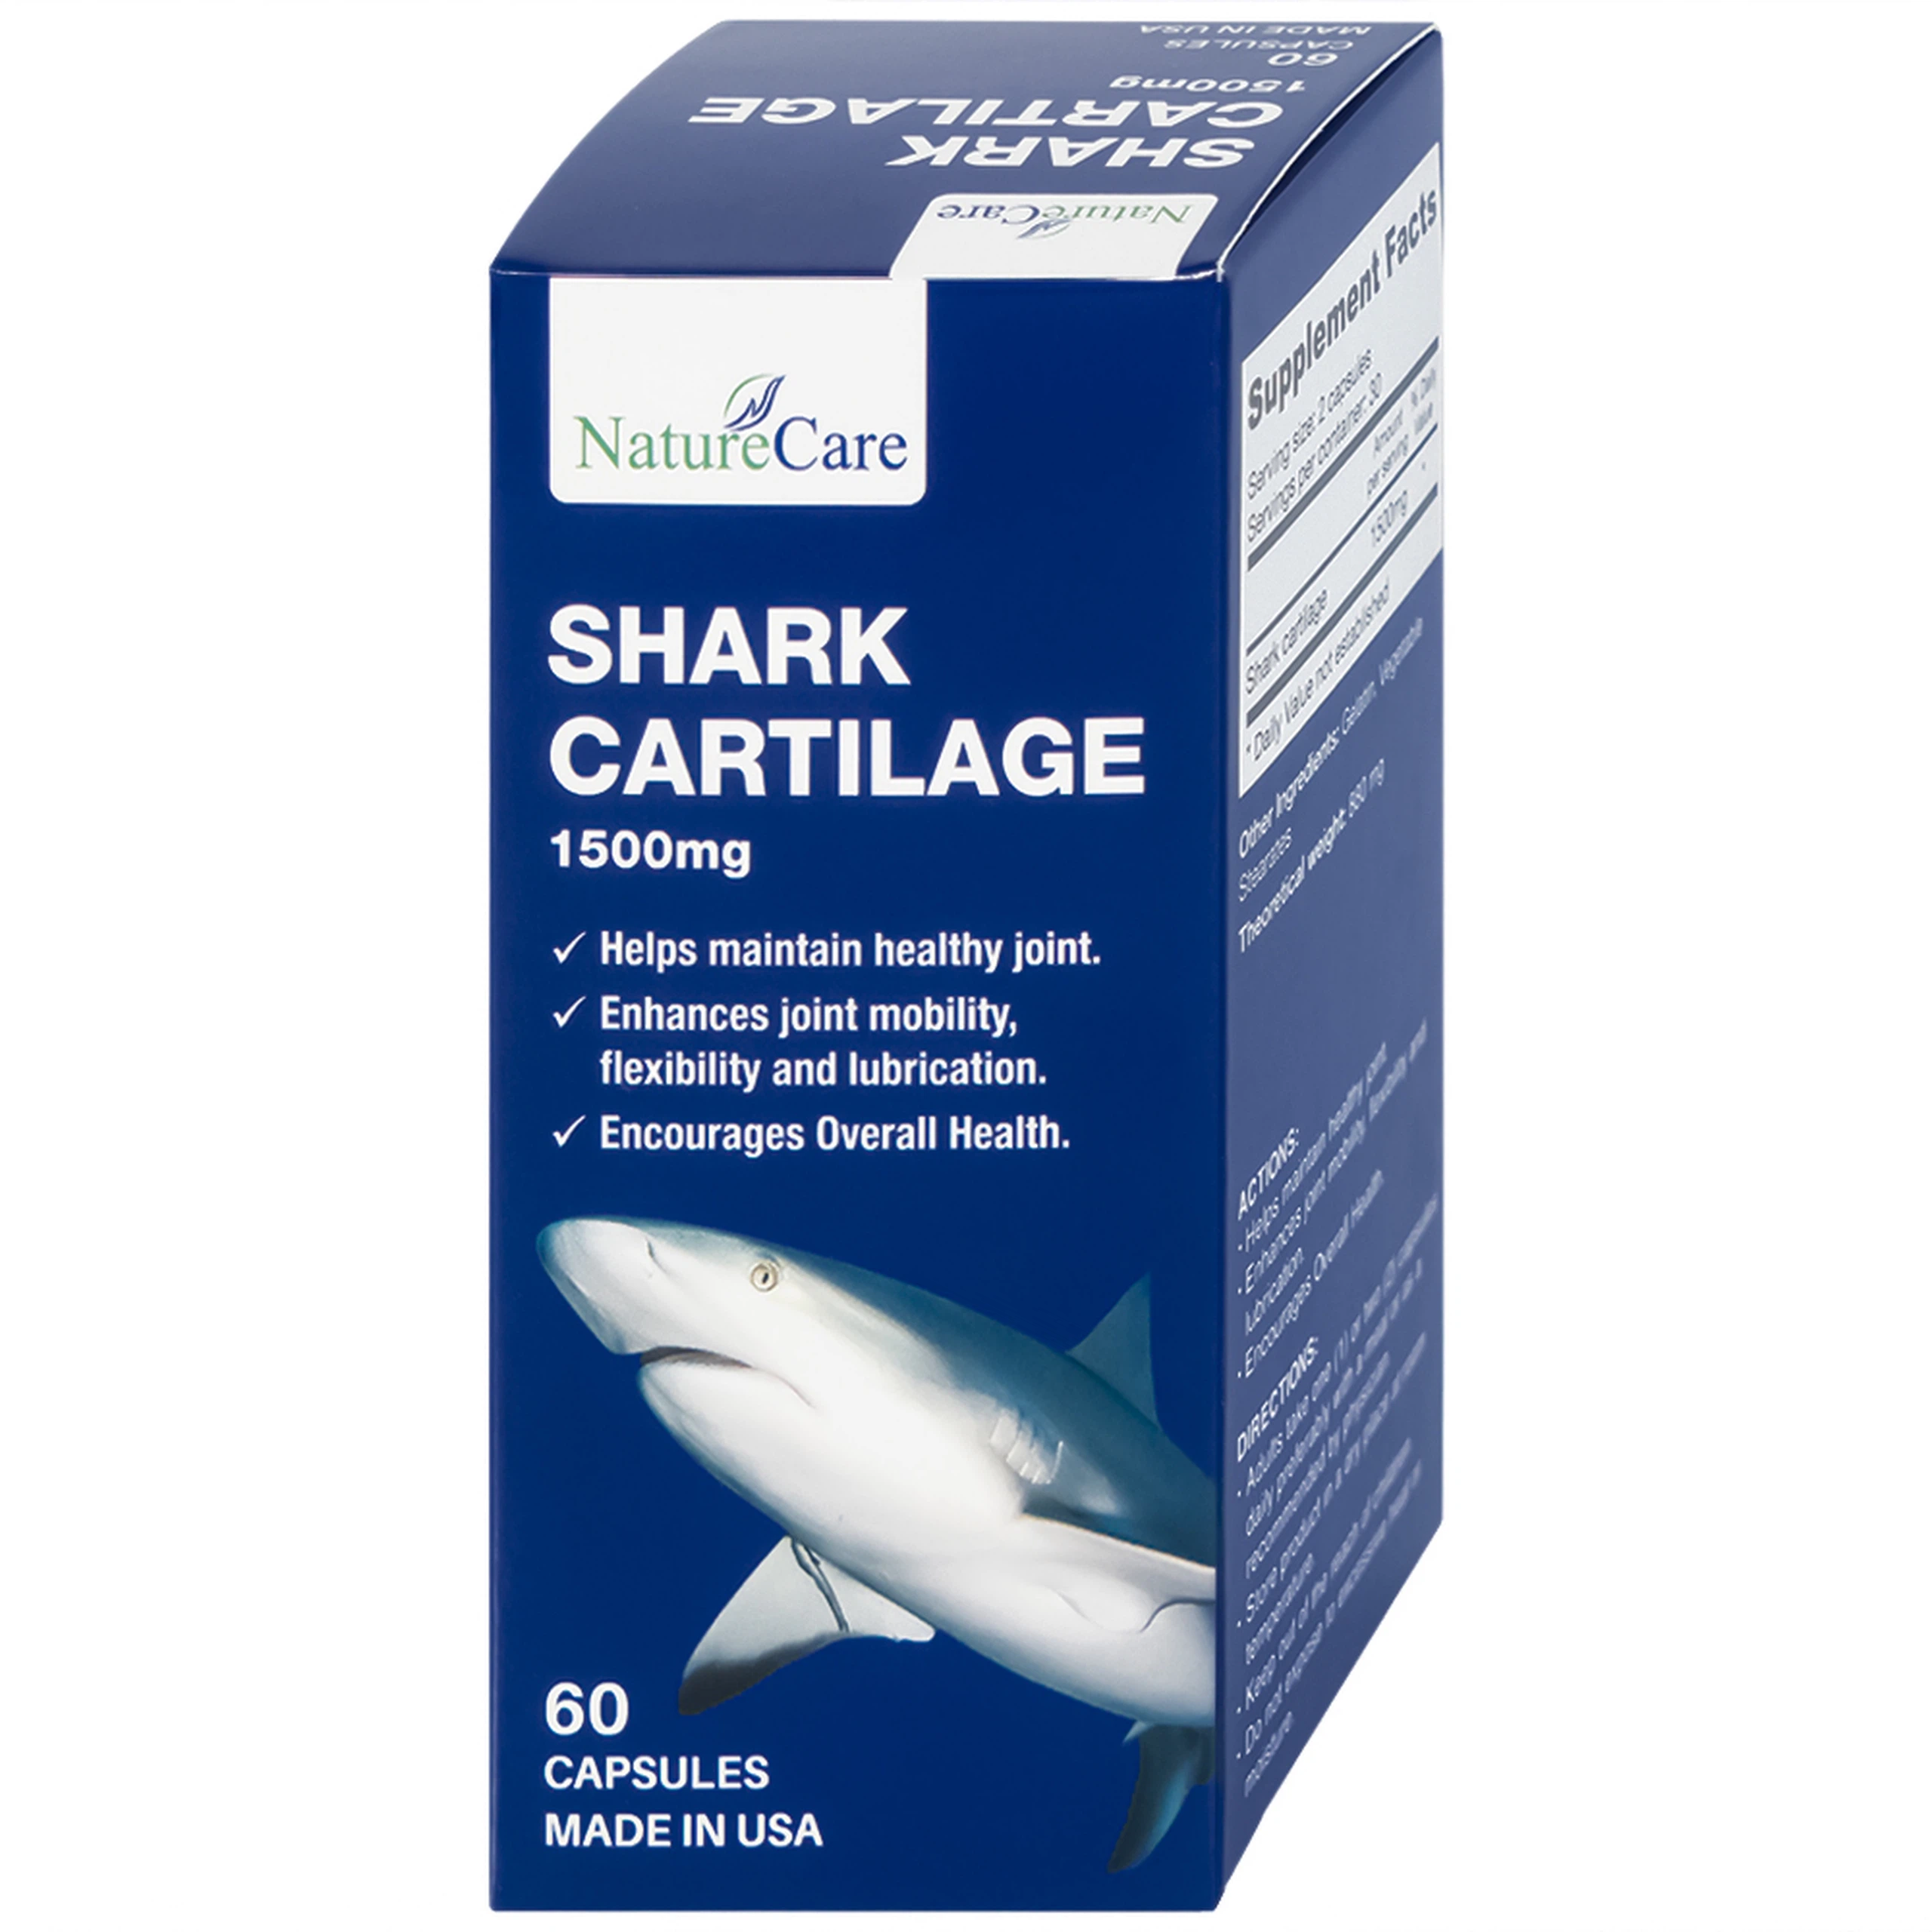 Viên uống Shark Cartilage NatureCare hỗ trợ tăng cường khả năng vận động linh hoạt và bôi trơn khớp (Hộp 60 viên)